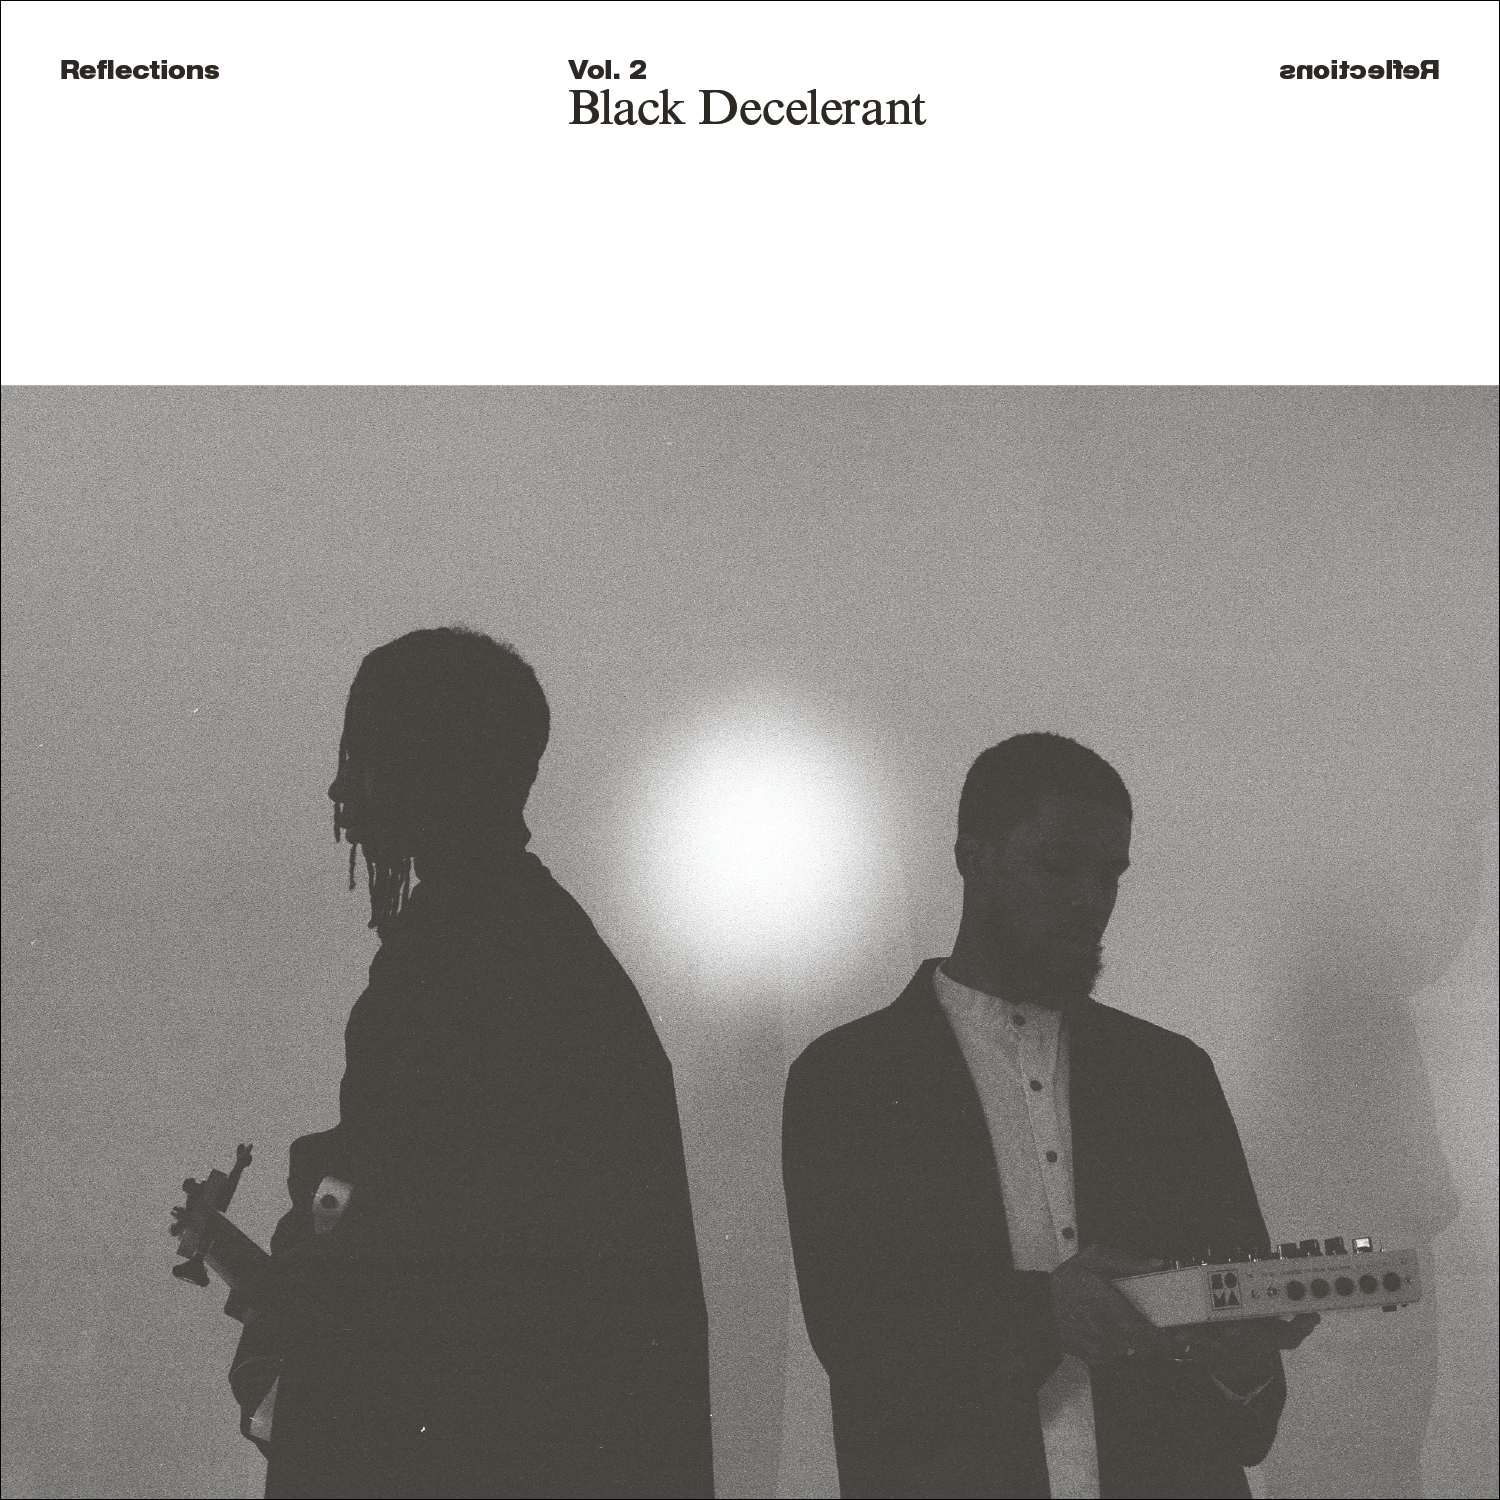 Reflections Vol. 2: Black Decelerant – Black Decelerant